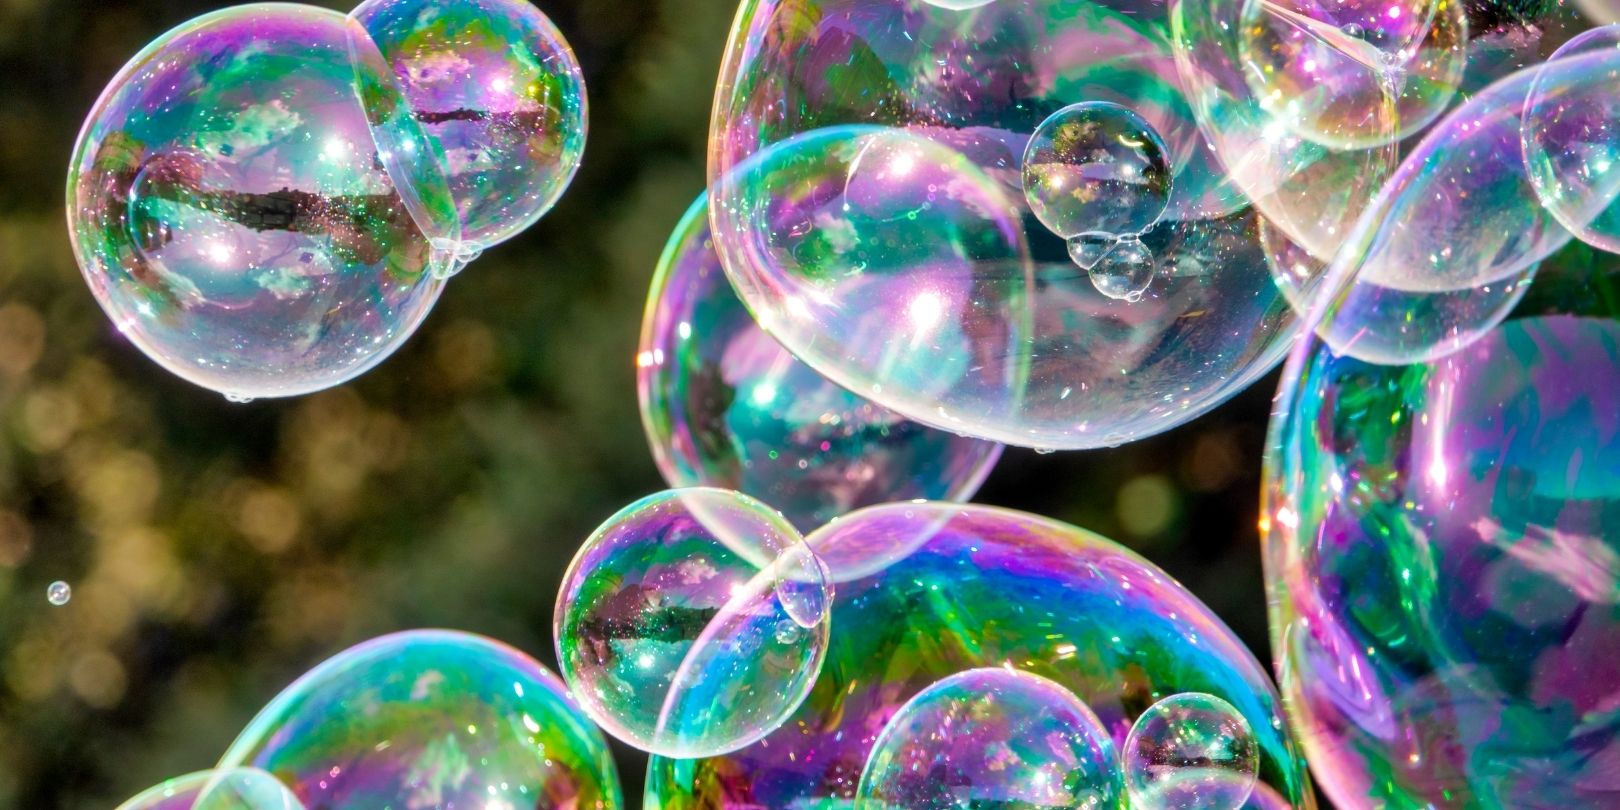 Les recettes de la physique pour obtenir des bulles gigantesques 